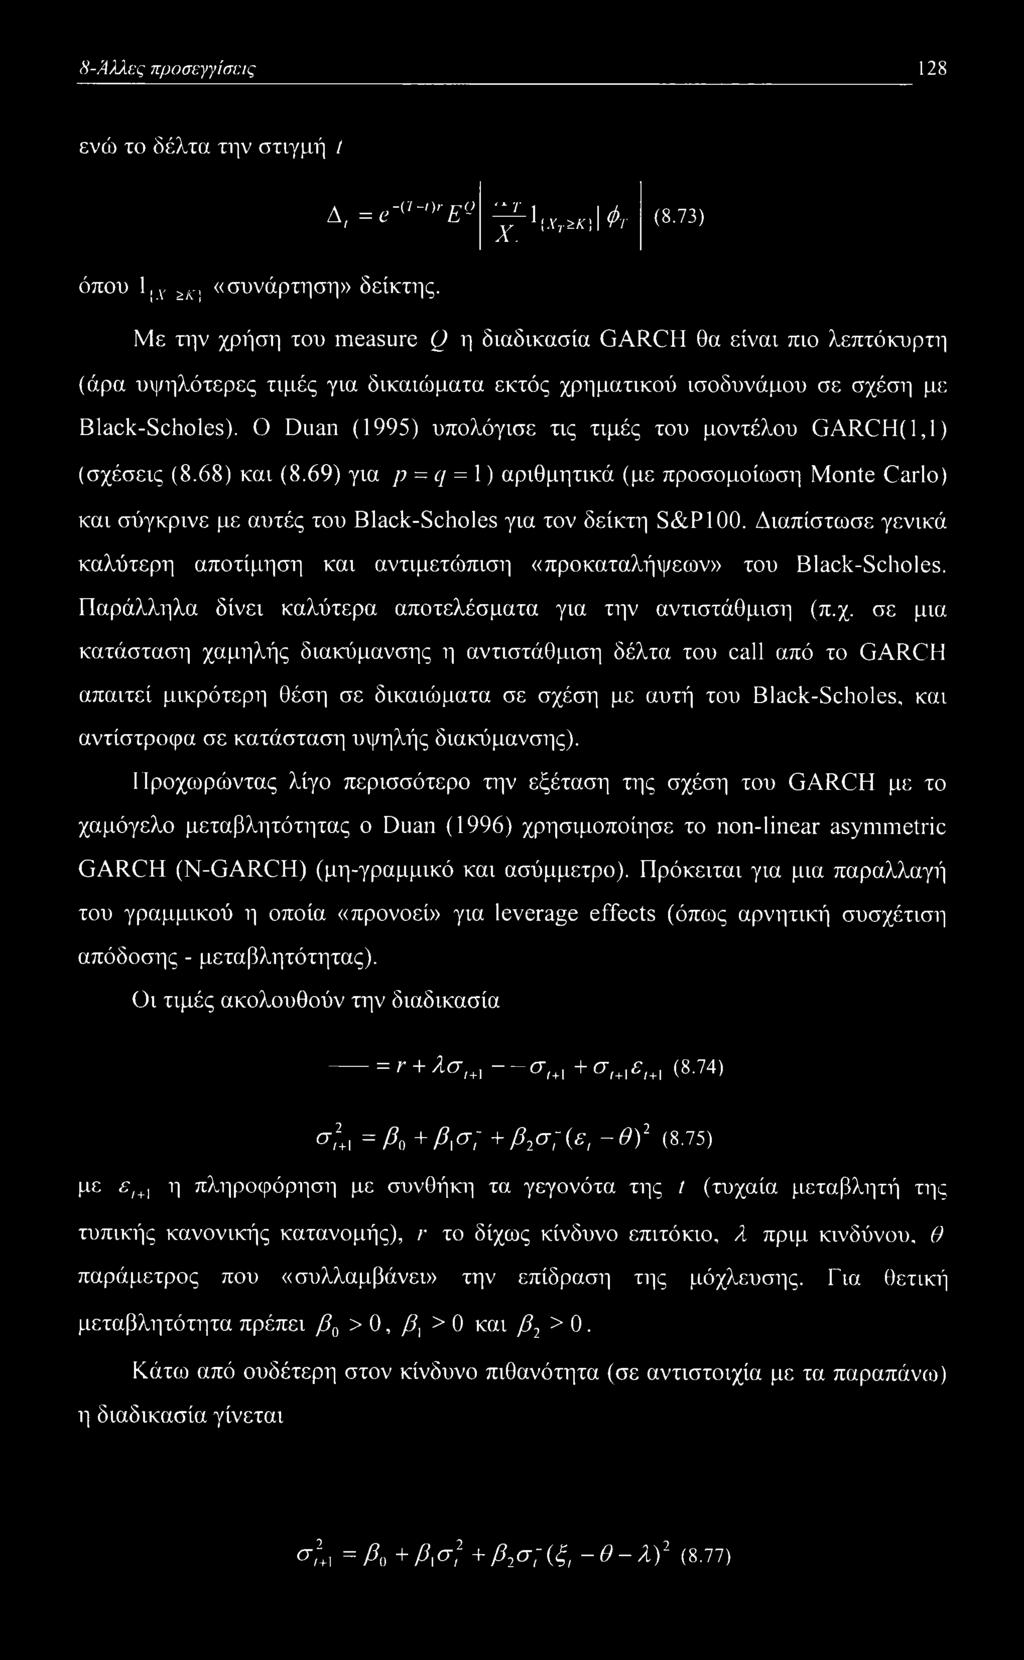 Ο Duan (1995) υπολόγισε τις τιμές του μοντέλου GARCH(1,1) (σχέσεις (8.68) και (8.